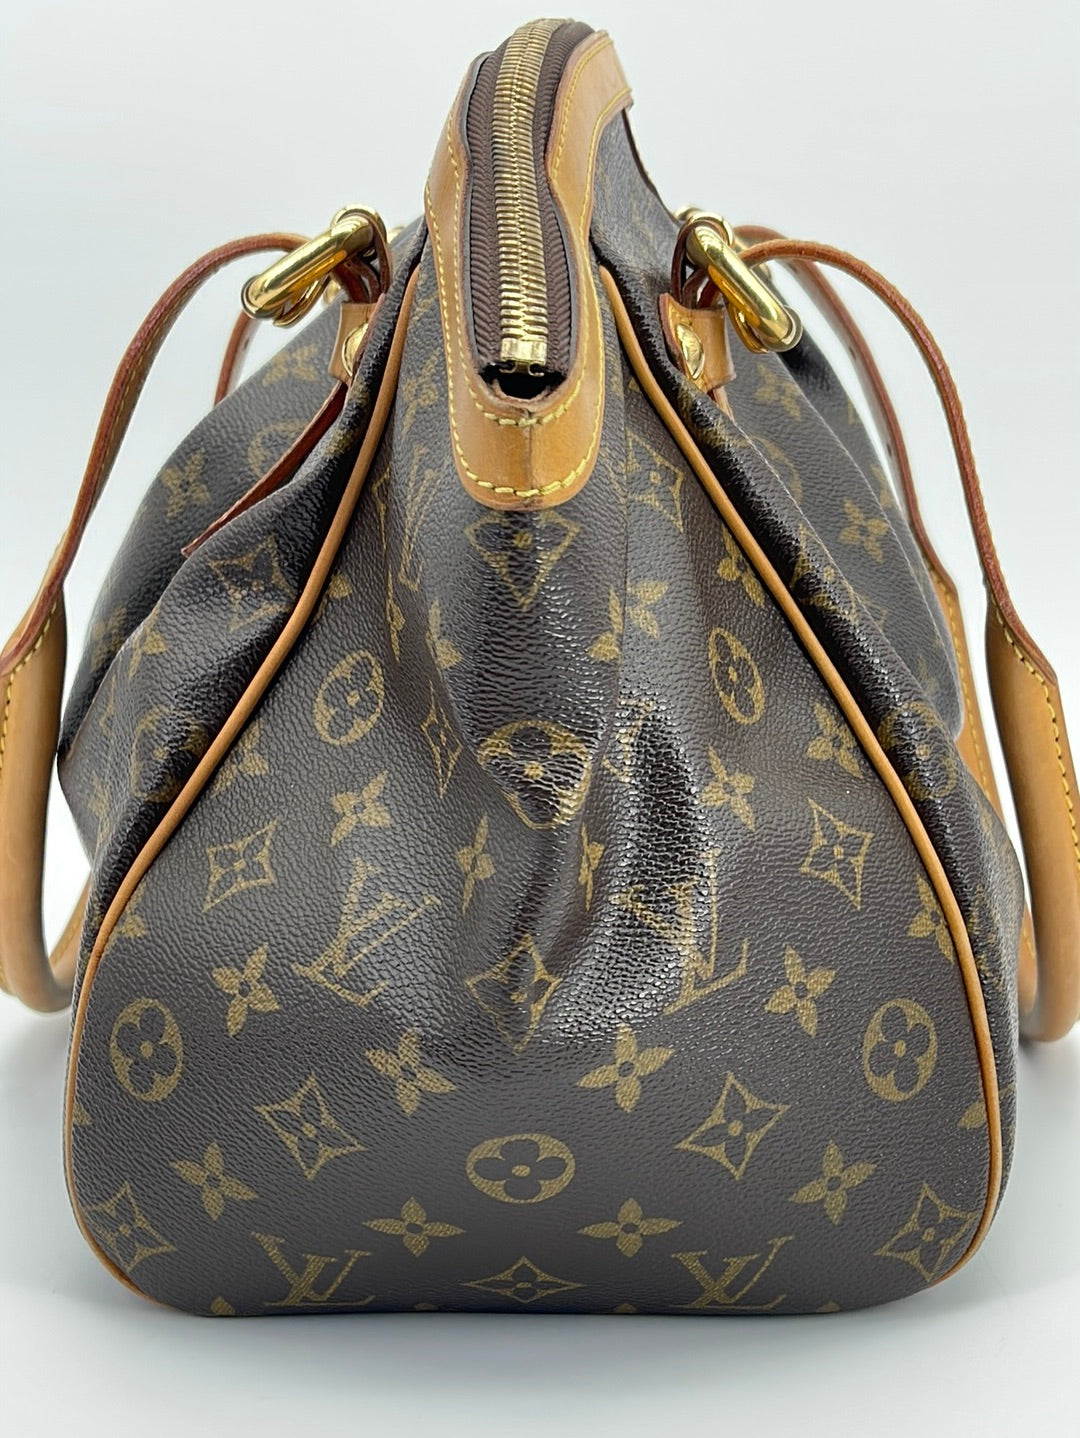 Louis Vuitton Tivoli Handbag 350095